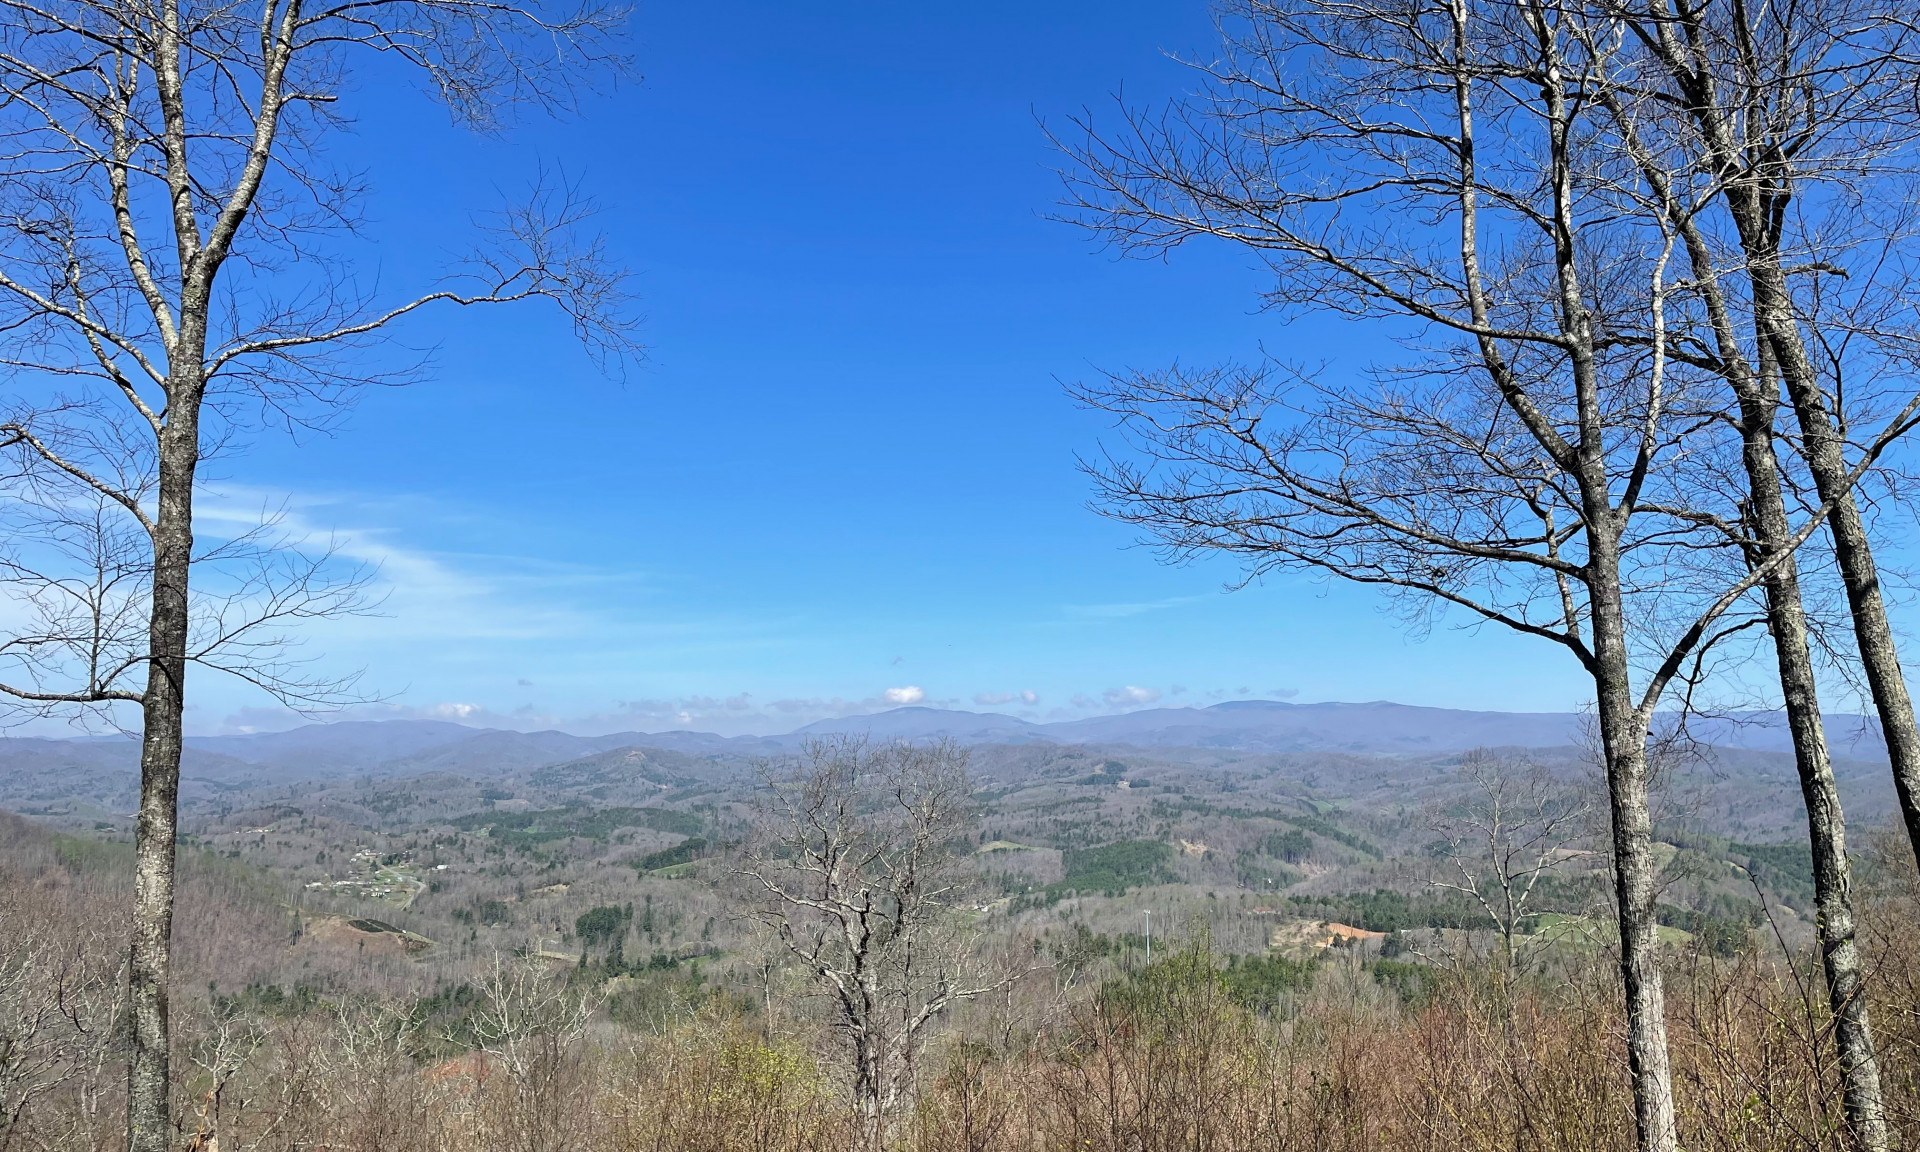 Views across Ashe County into Virginia.